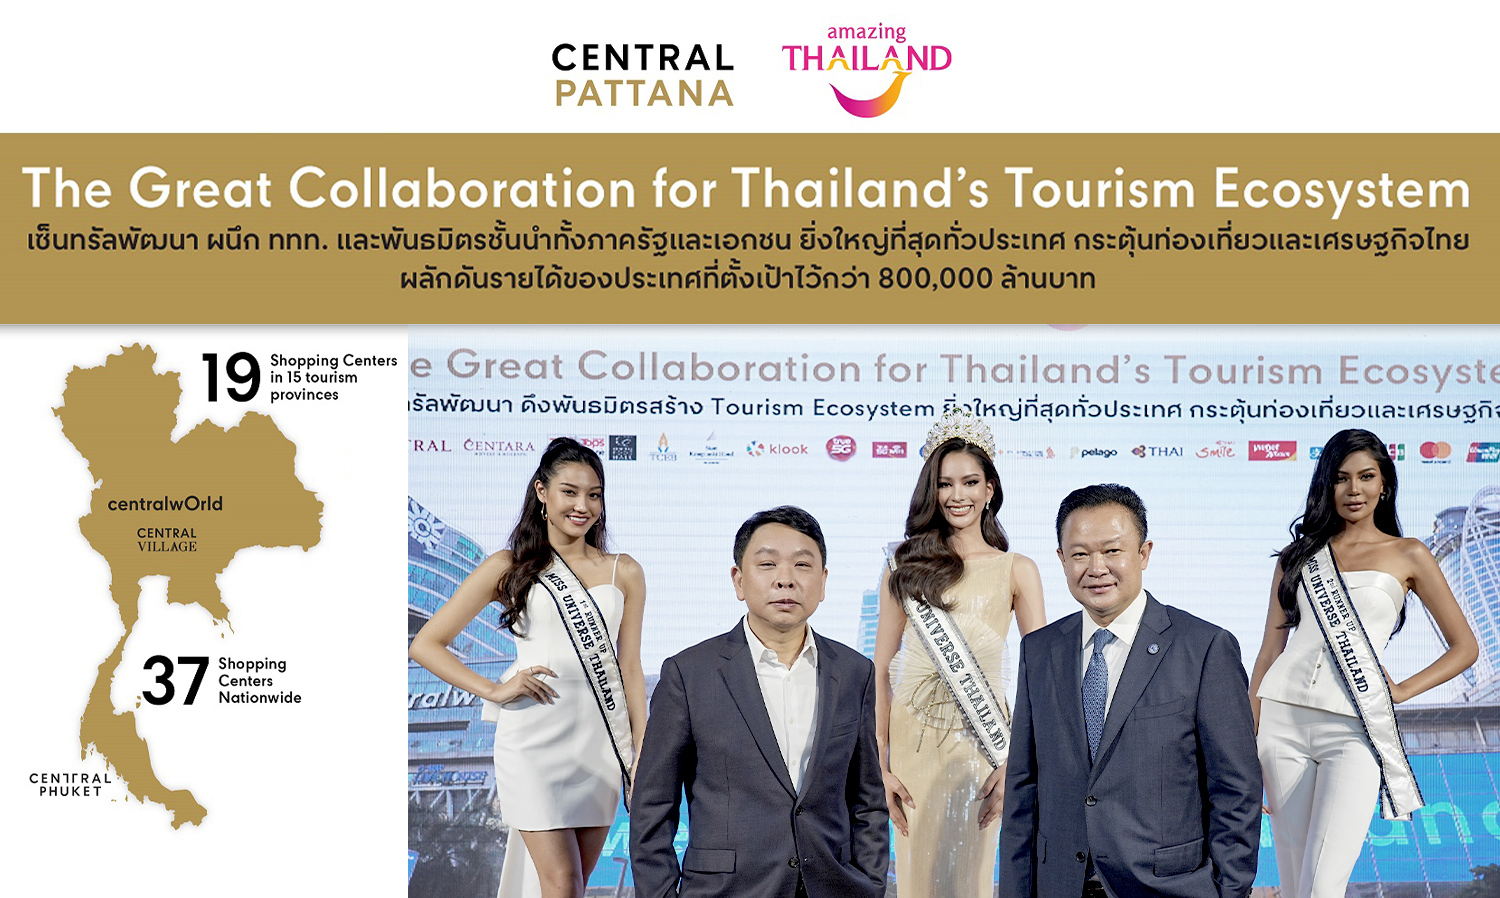 เซ็นทรัลพัฒนา ผนึก ททท. และพันธมิตรชั้นนำ เปิดแคมเปญยิ่งใหญ่ “The Great Collaboration for Thailand’s Tourism Ecosystem” กระตุ้นท่องเที่ยวและเศรษฐกิจไทย ผลักดันรายได้ของประเทศที่ตั้งเป้าไว้กว่า 800,000 ล้านบาท 